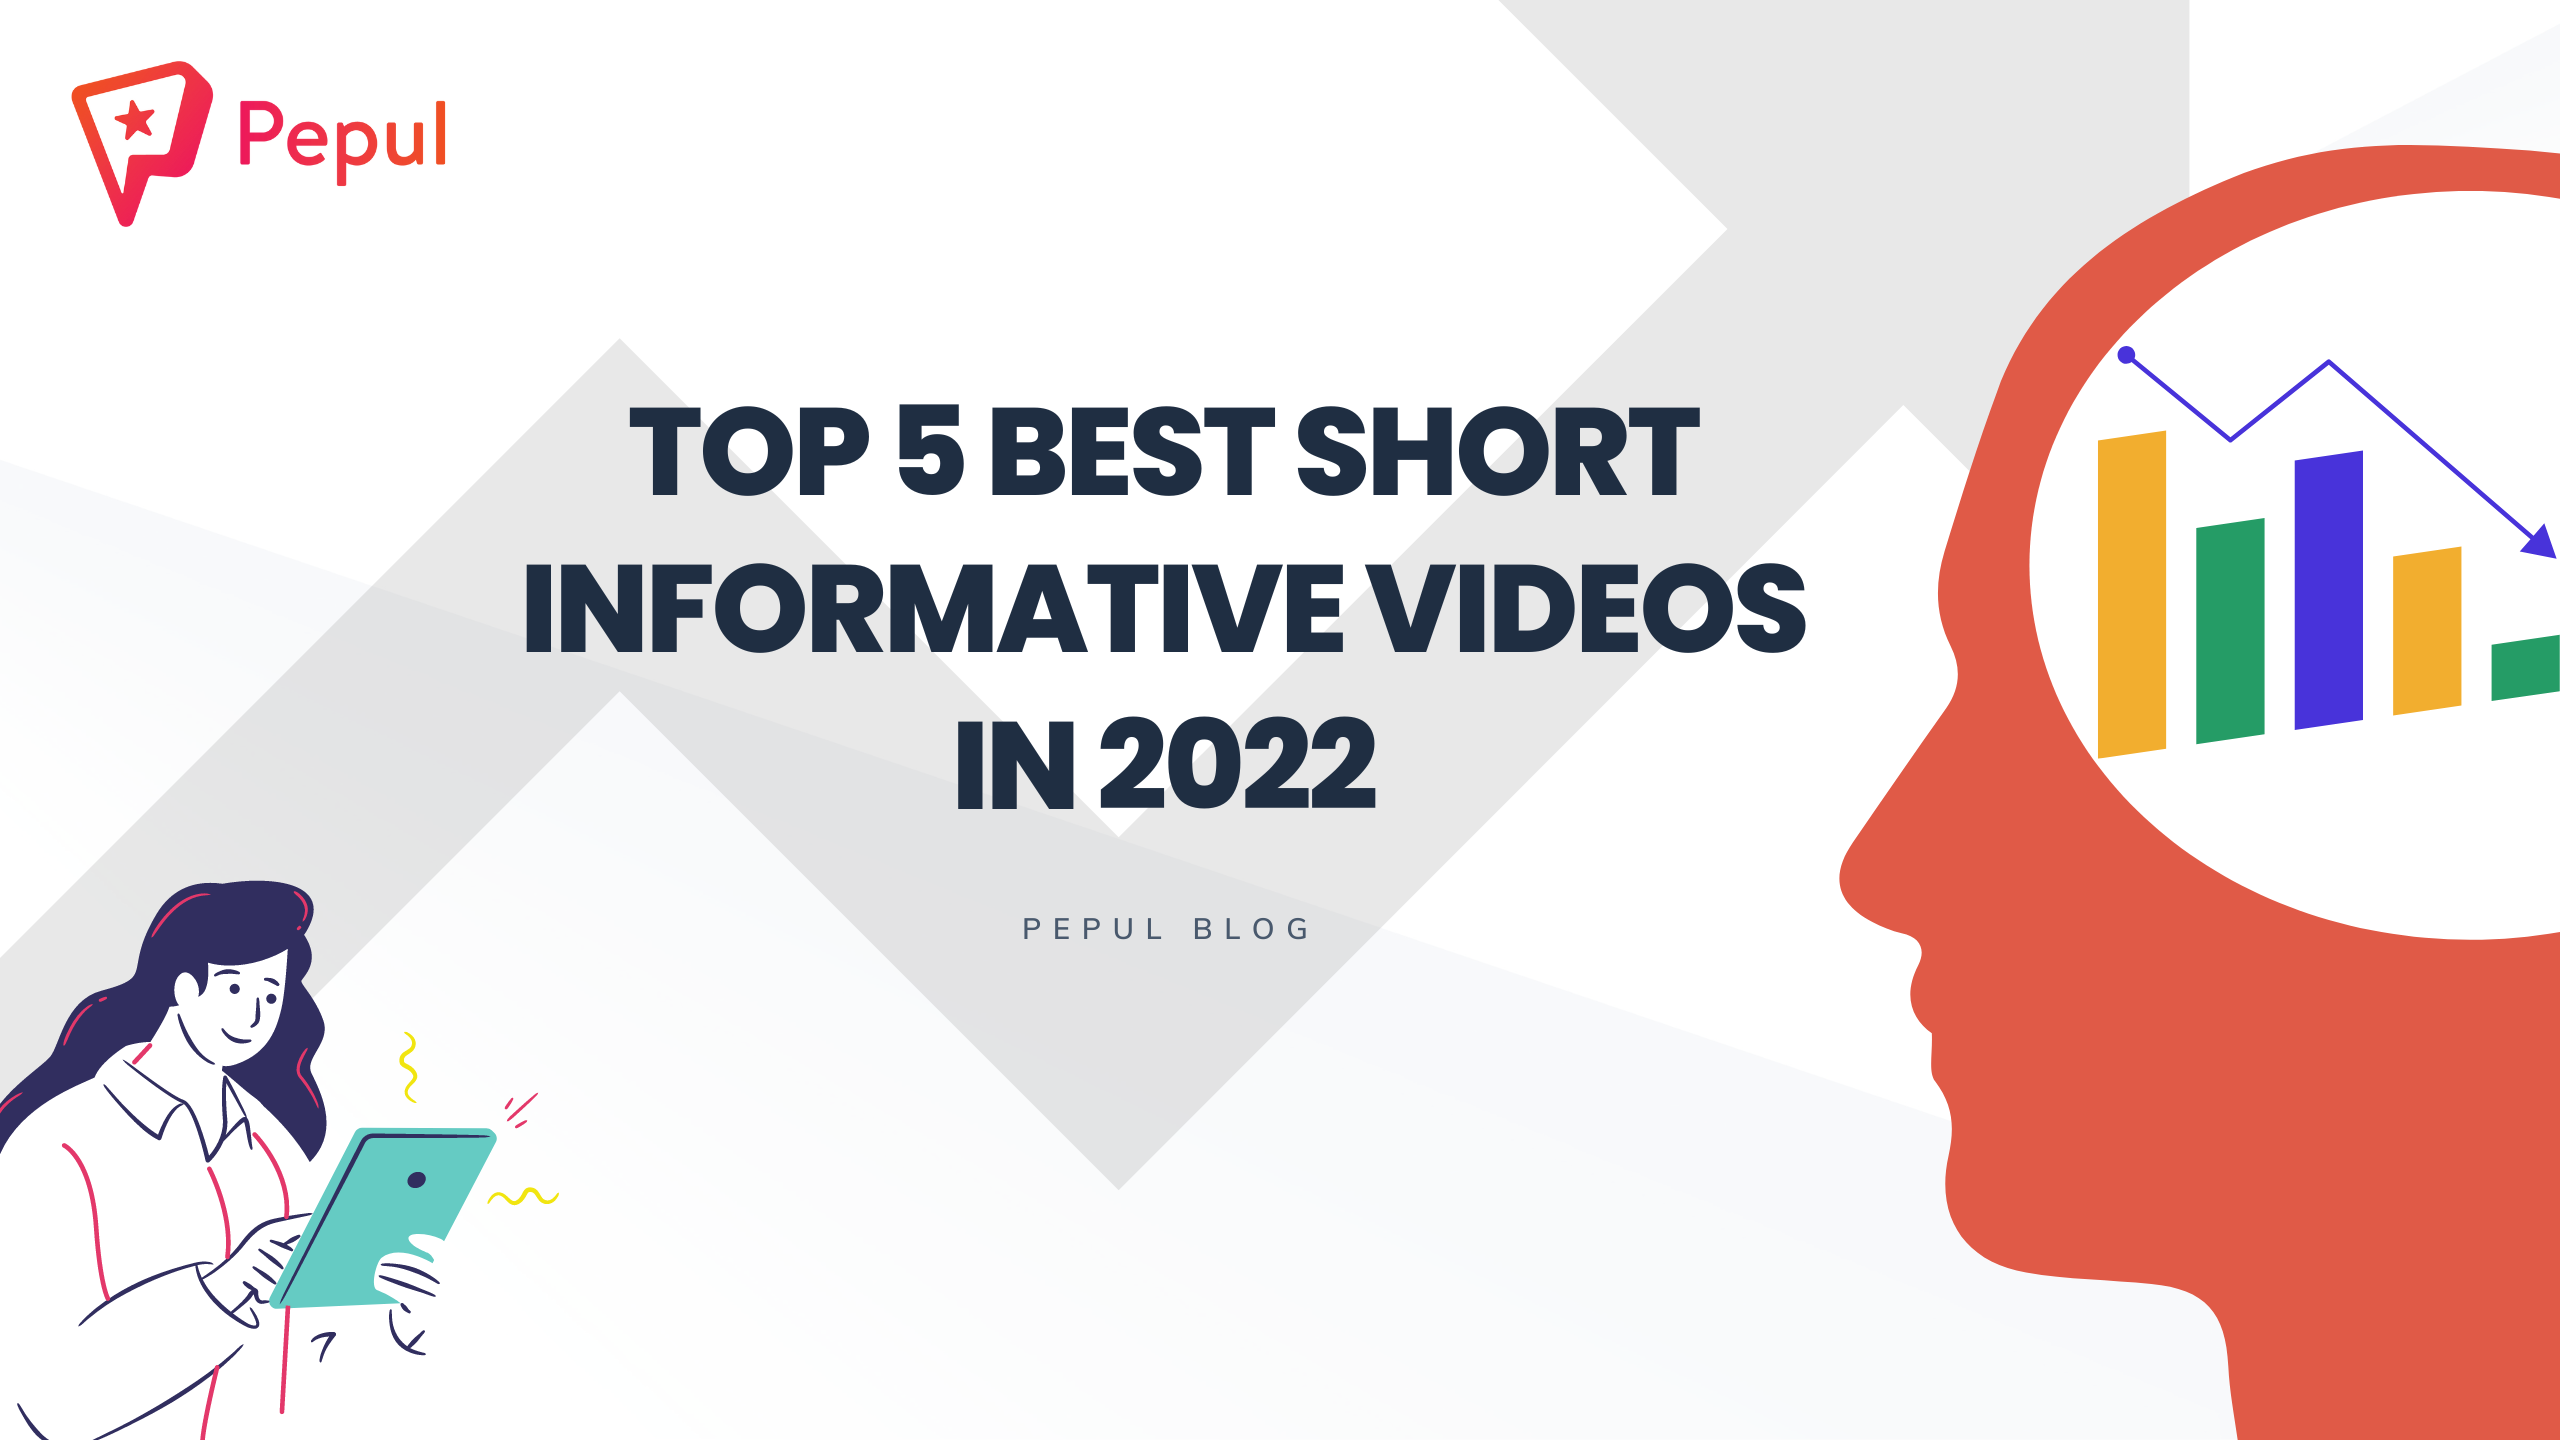 Top 5 Best Short Informative Videos in 2022